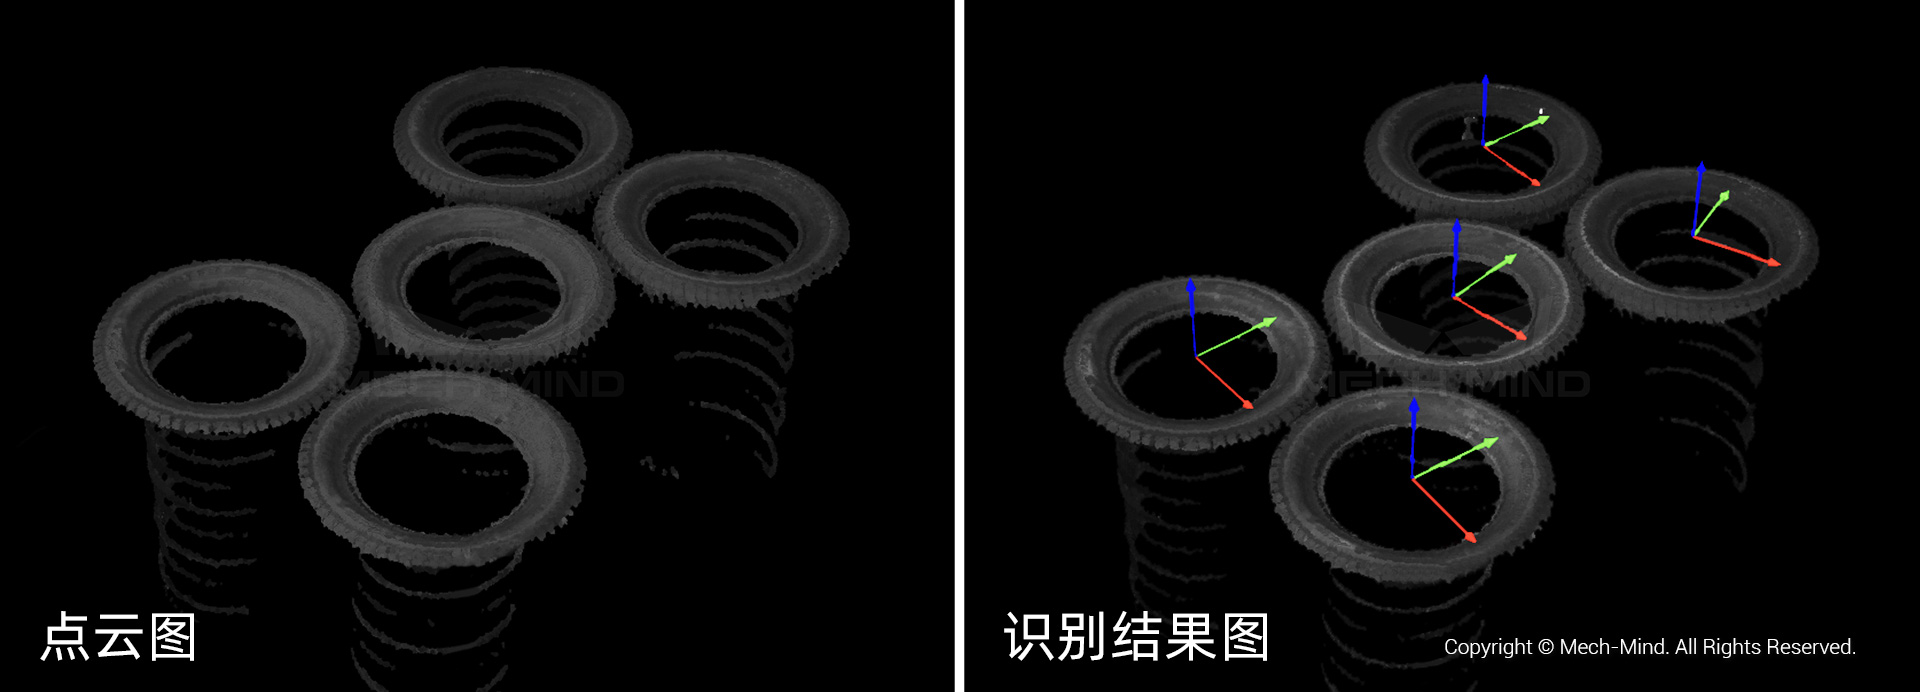 海外案例分享 | 3D视觉拆垛助力智能轮胎仓库